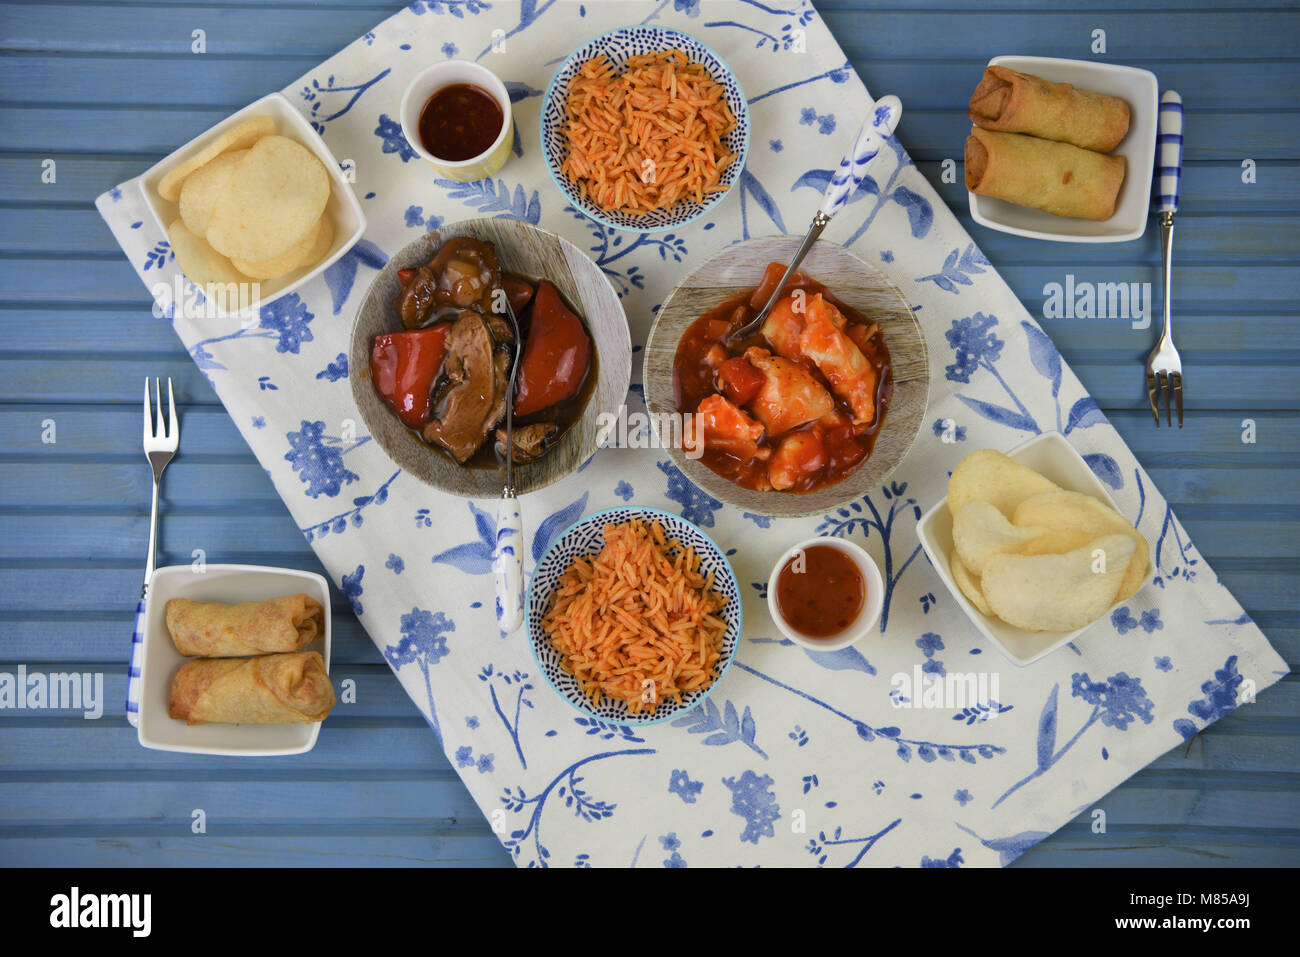 Plats à emporter chinois avec de la nourriture chaude dans les plats cuisinés et servis sur une table Banque D'Images